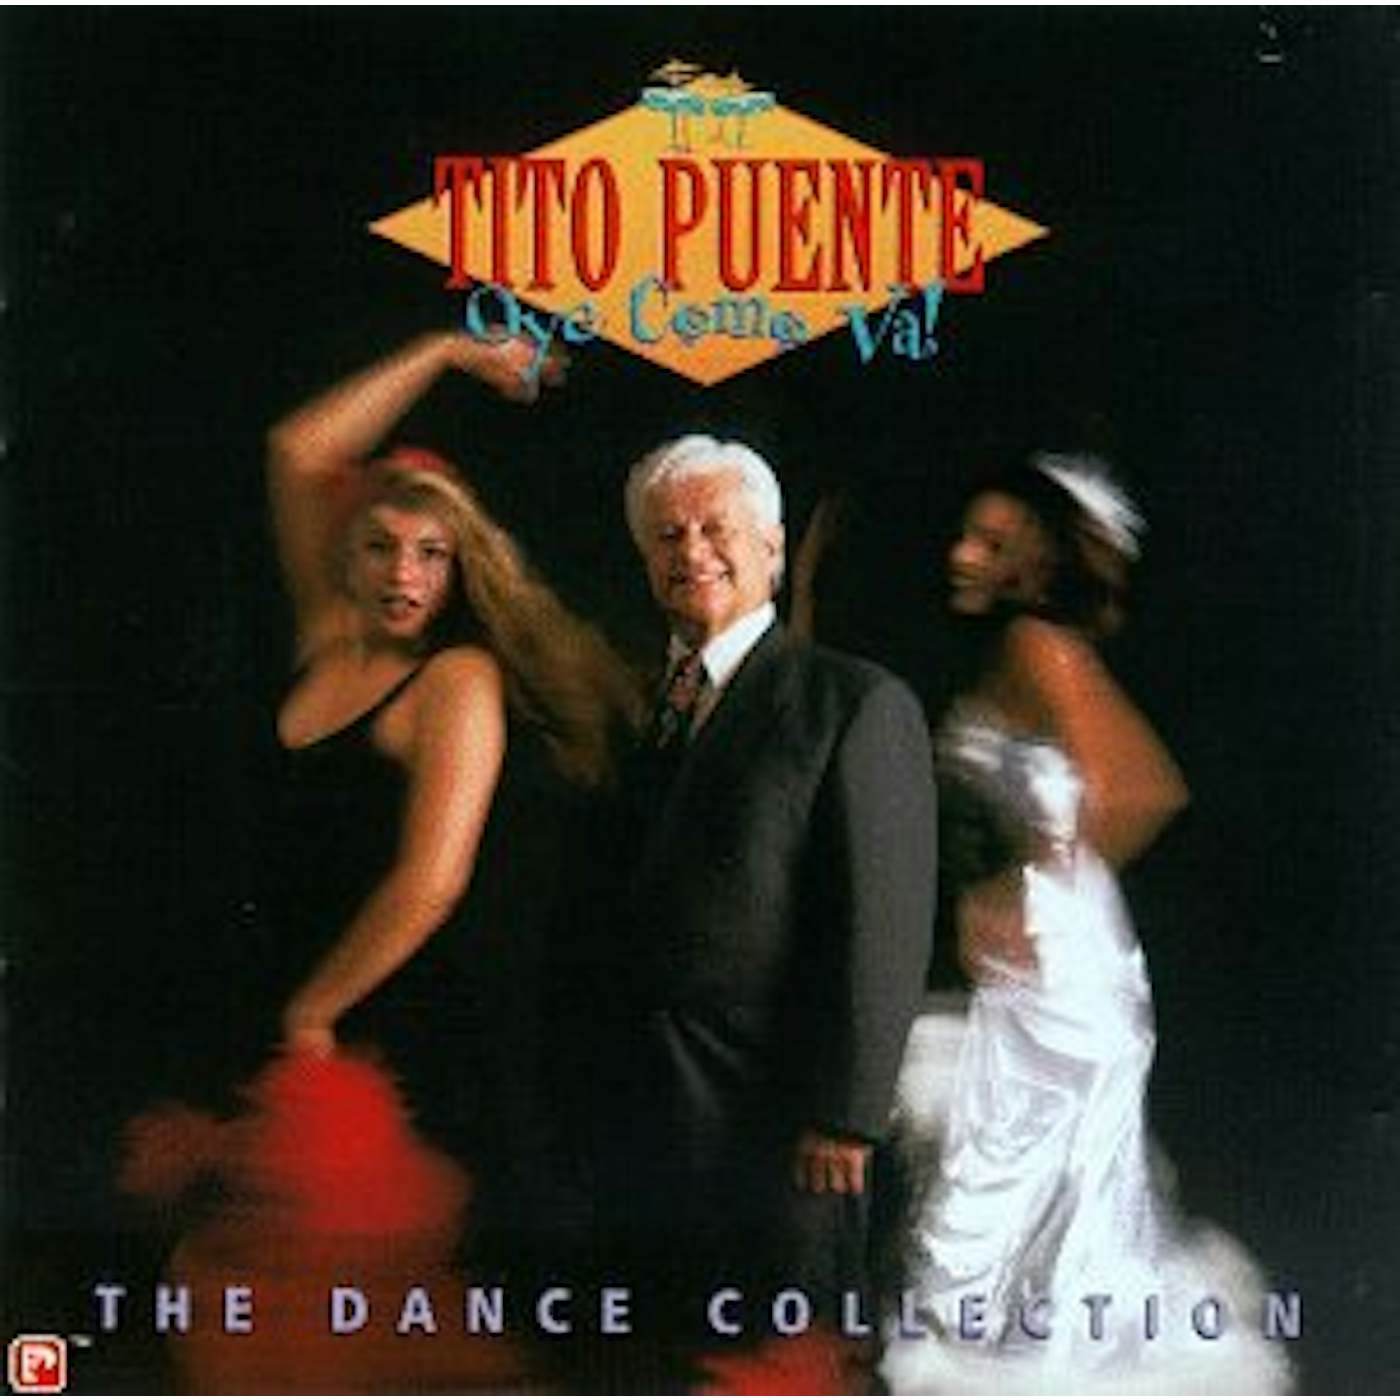 Tito Puente OYE COMO VA: DANCE COLLECTION CD